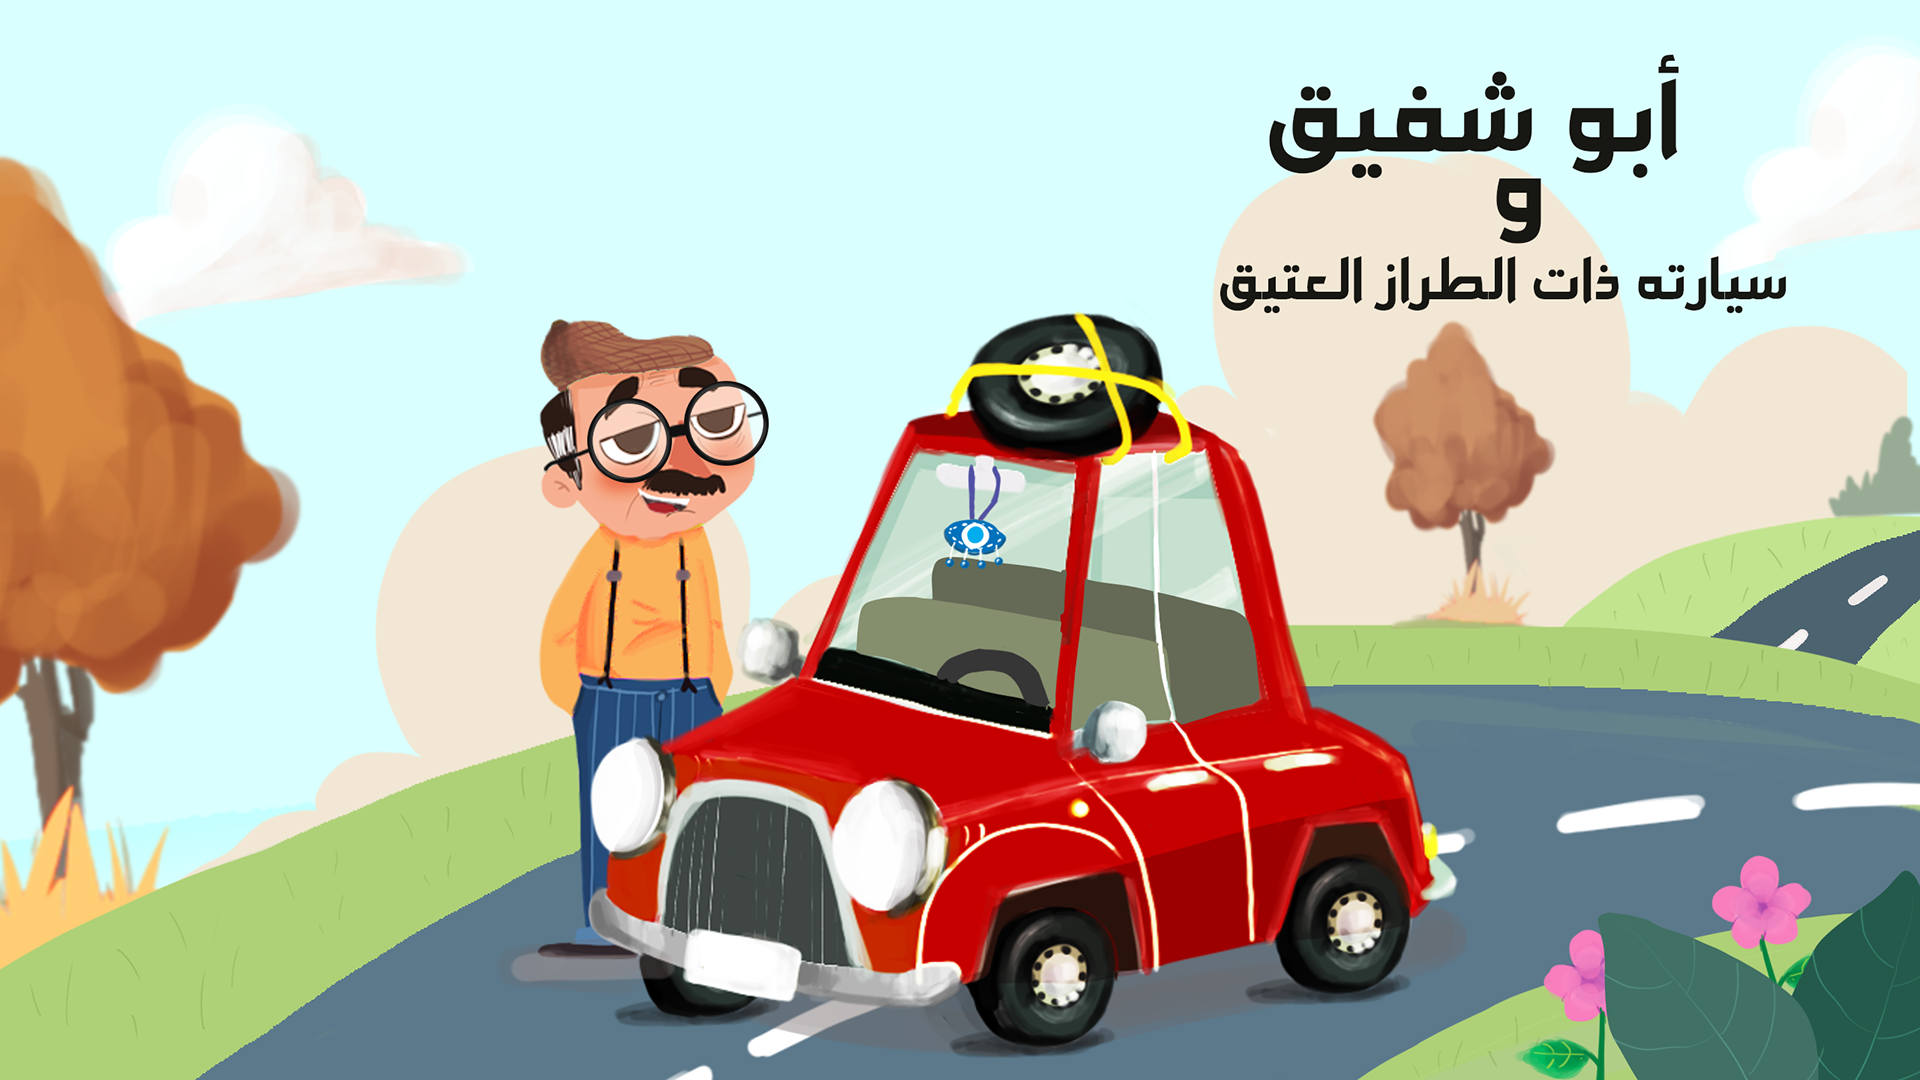 أبو شفيق وسيارته ذات الطراز العتيق on Behance